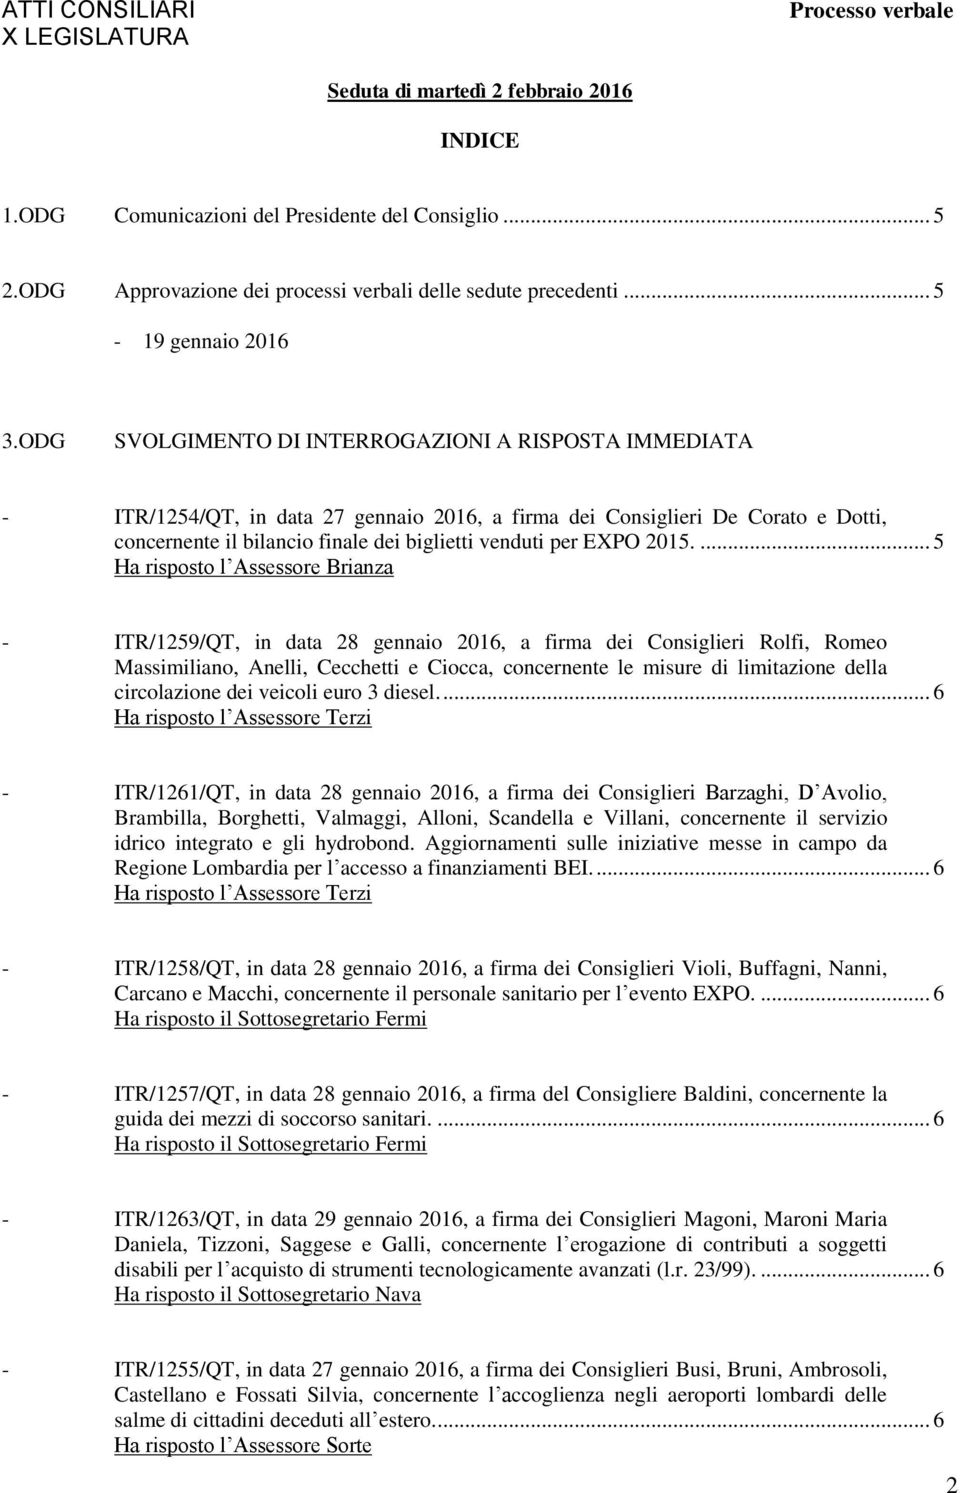 ODG SVOLGIMENTO DI INTERROGAZIONI A RISPOSTA IMMEDIATA - ITR/1254/QT, in data 27 gennaio 2016, a firma dei Consiglieri De Corato e Dotti, concernente il bilancio finale dei biglietti venduti per EXPO